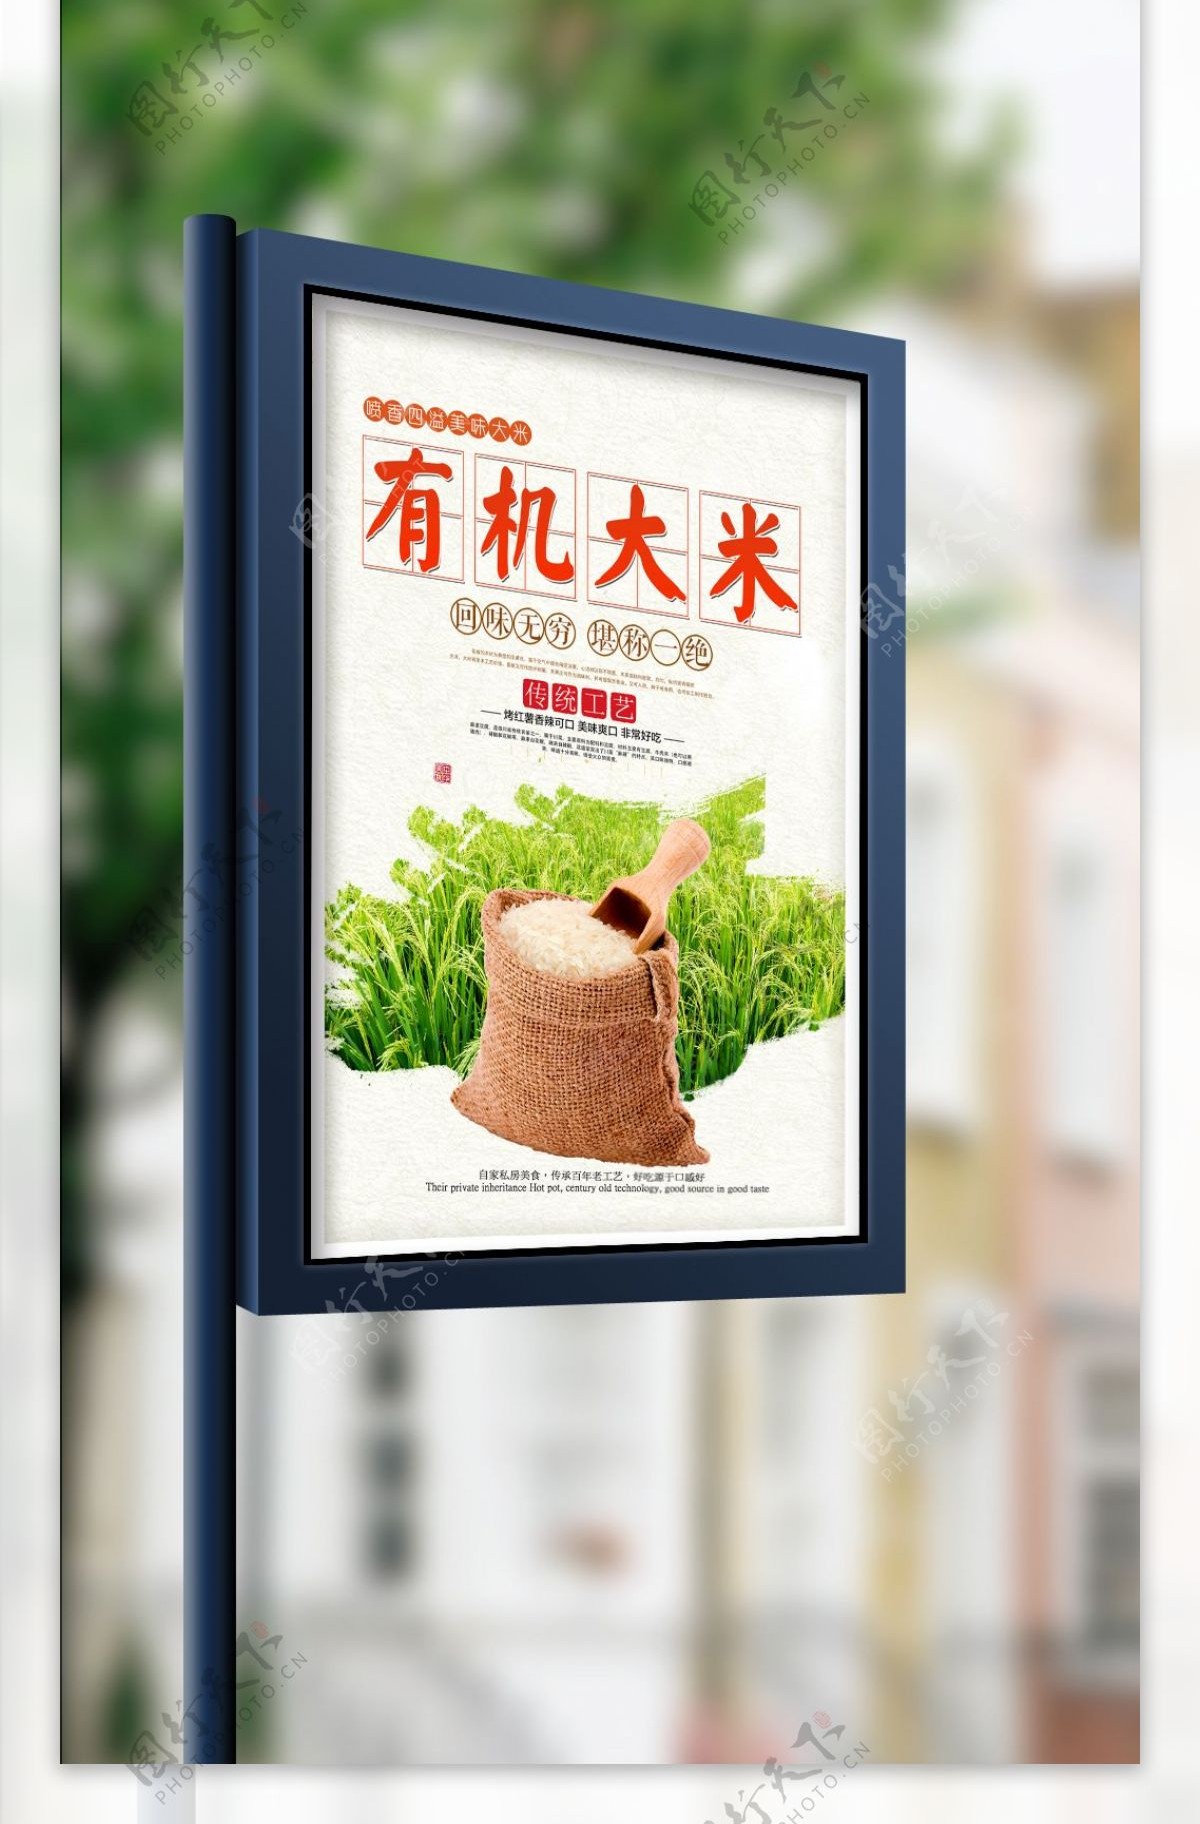 中国风有机大米促销海报设计